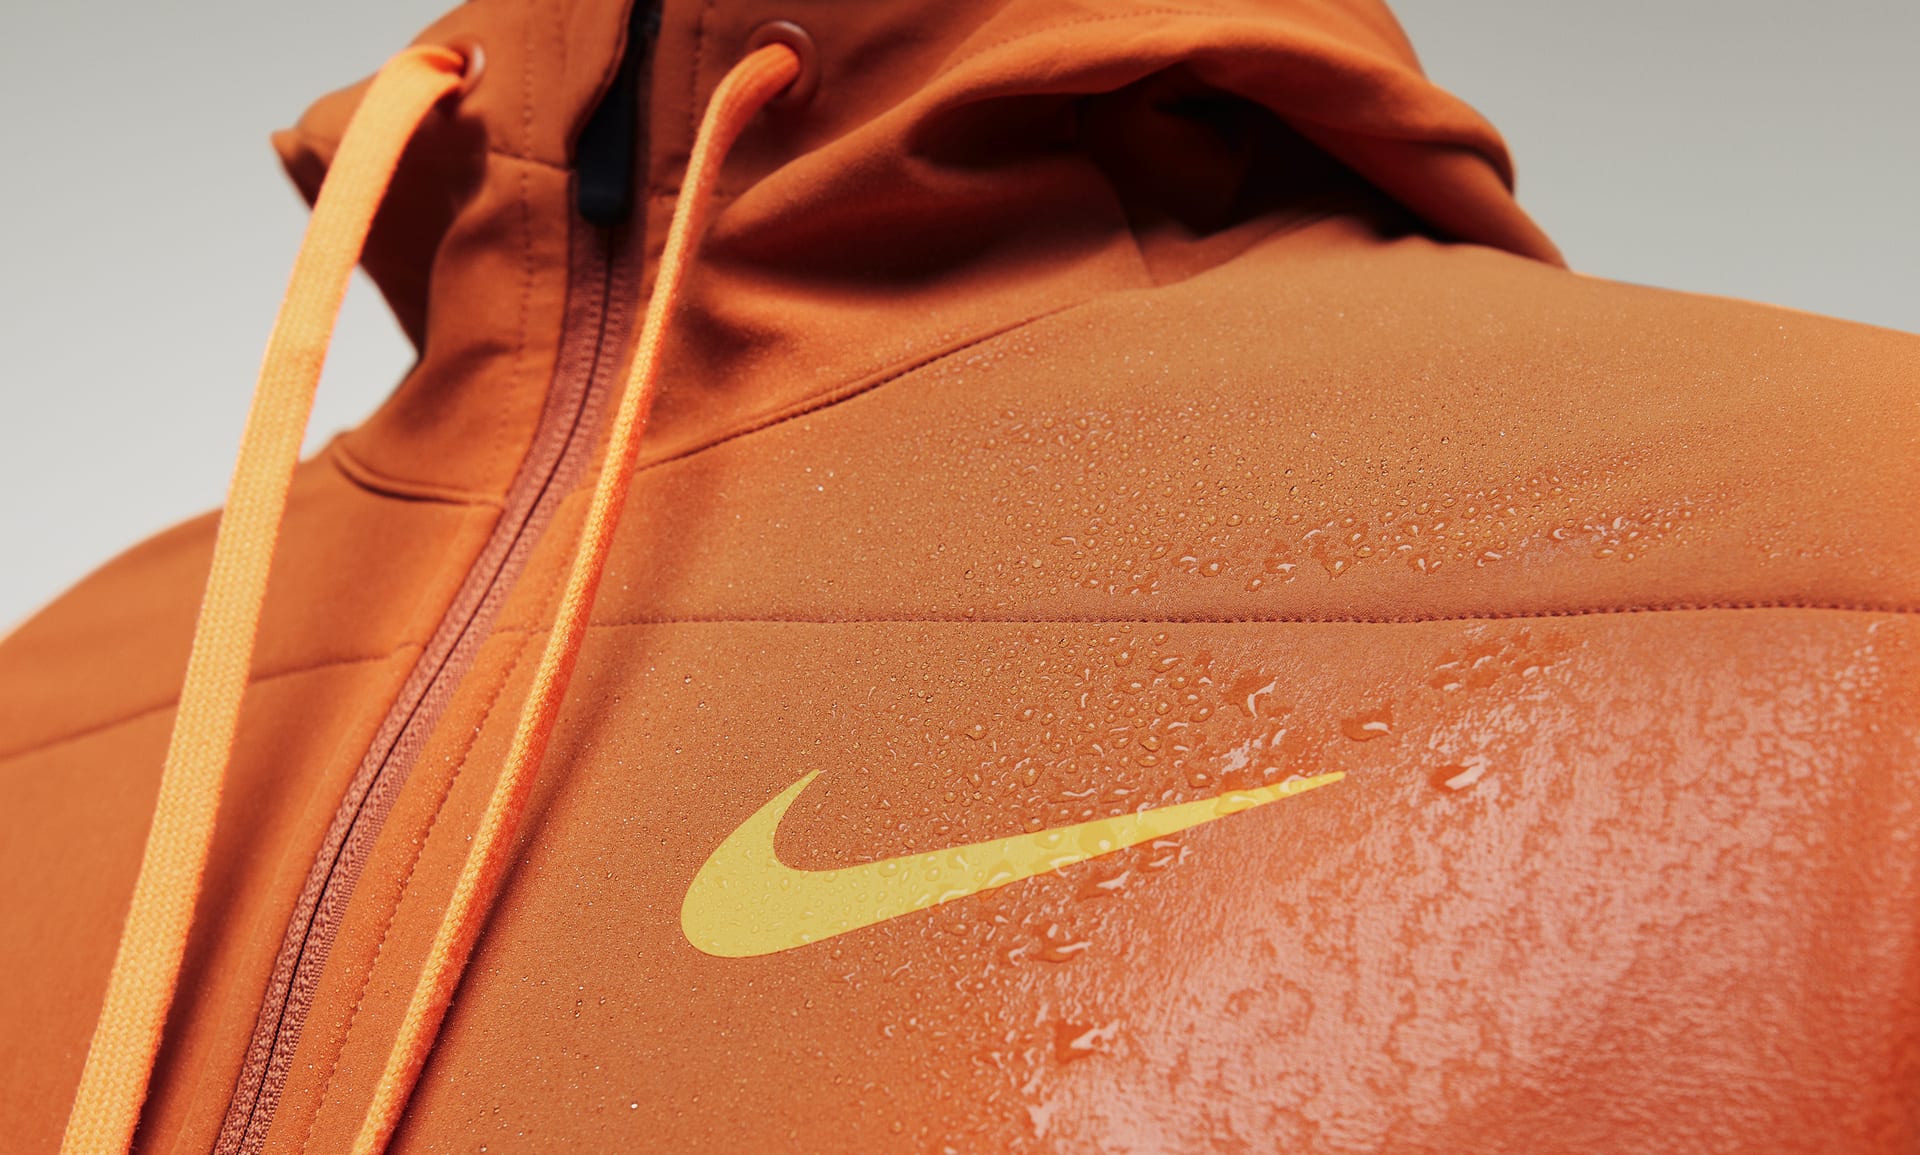 Sudadera acondicionada para el invierno con capucha de cierre completo para hombre Nike Therma FIT. Nike.com